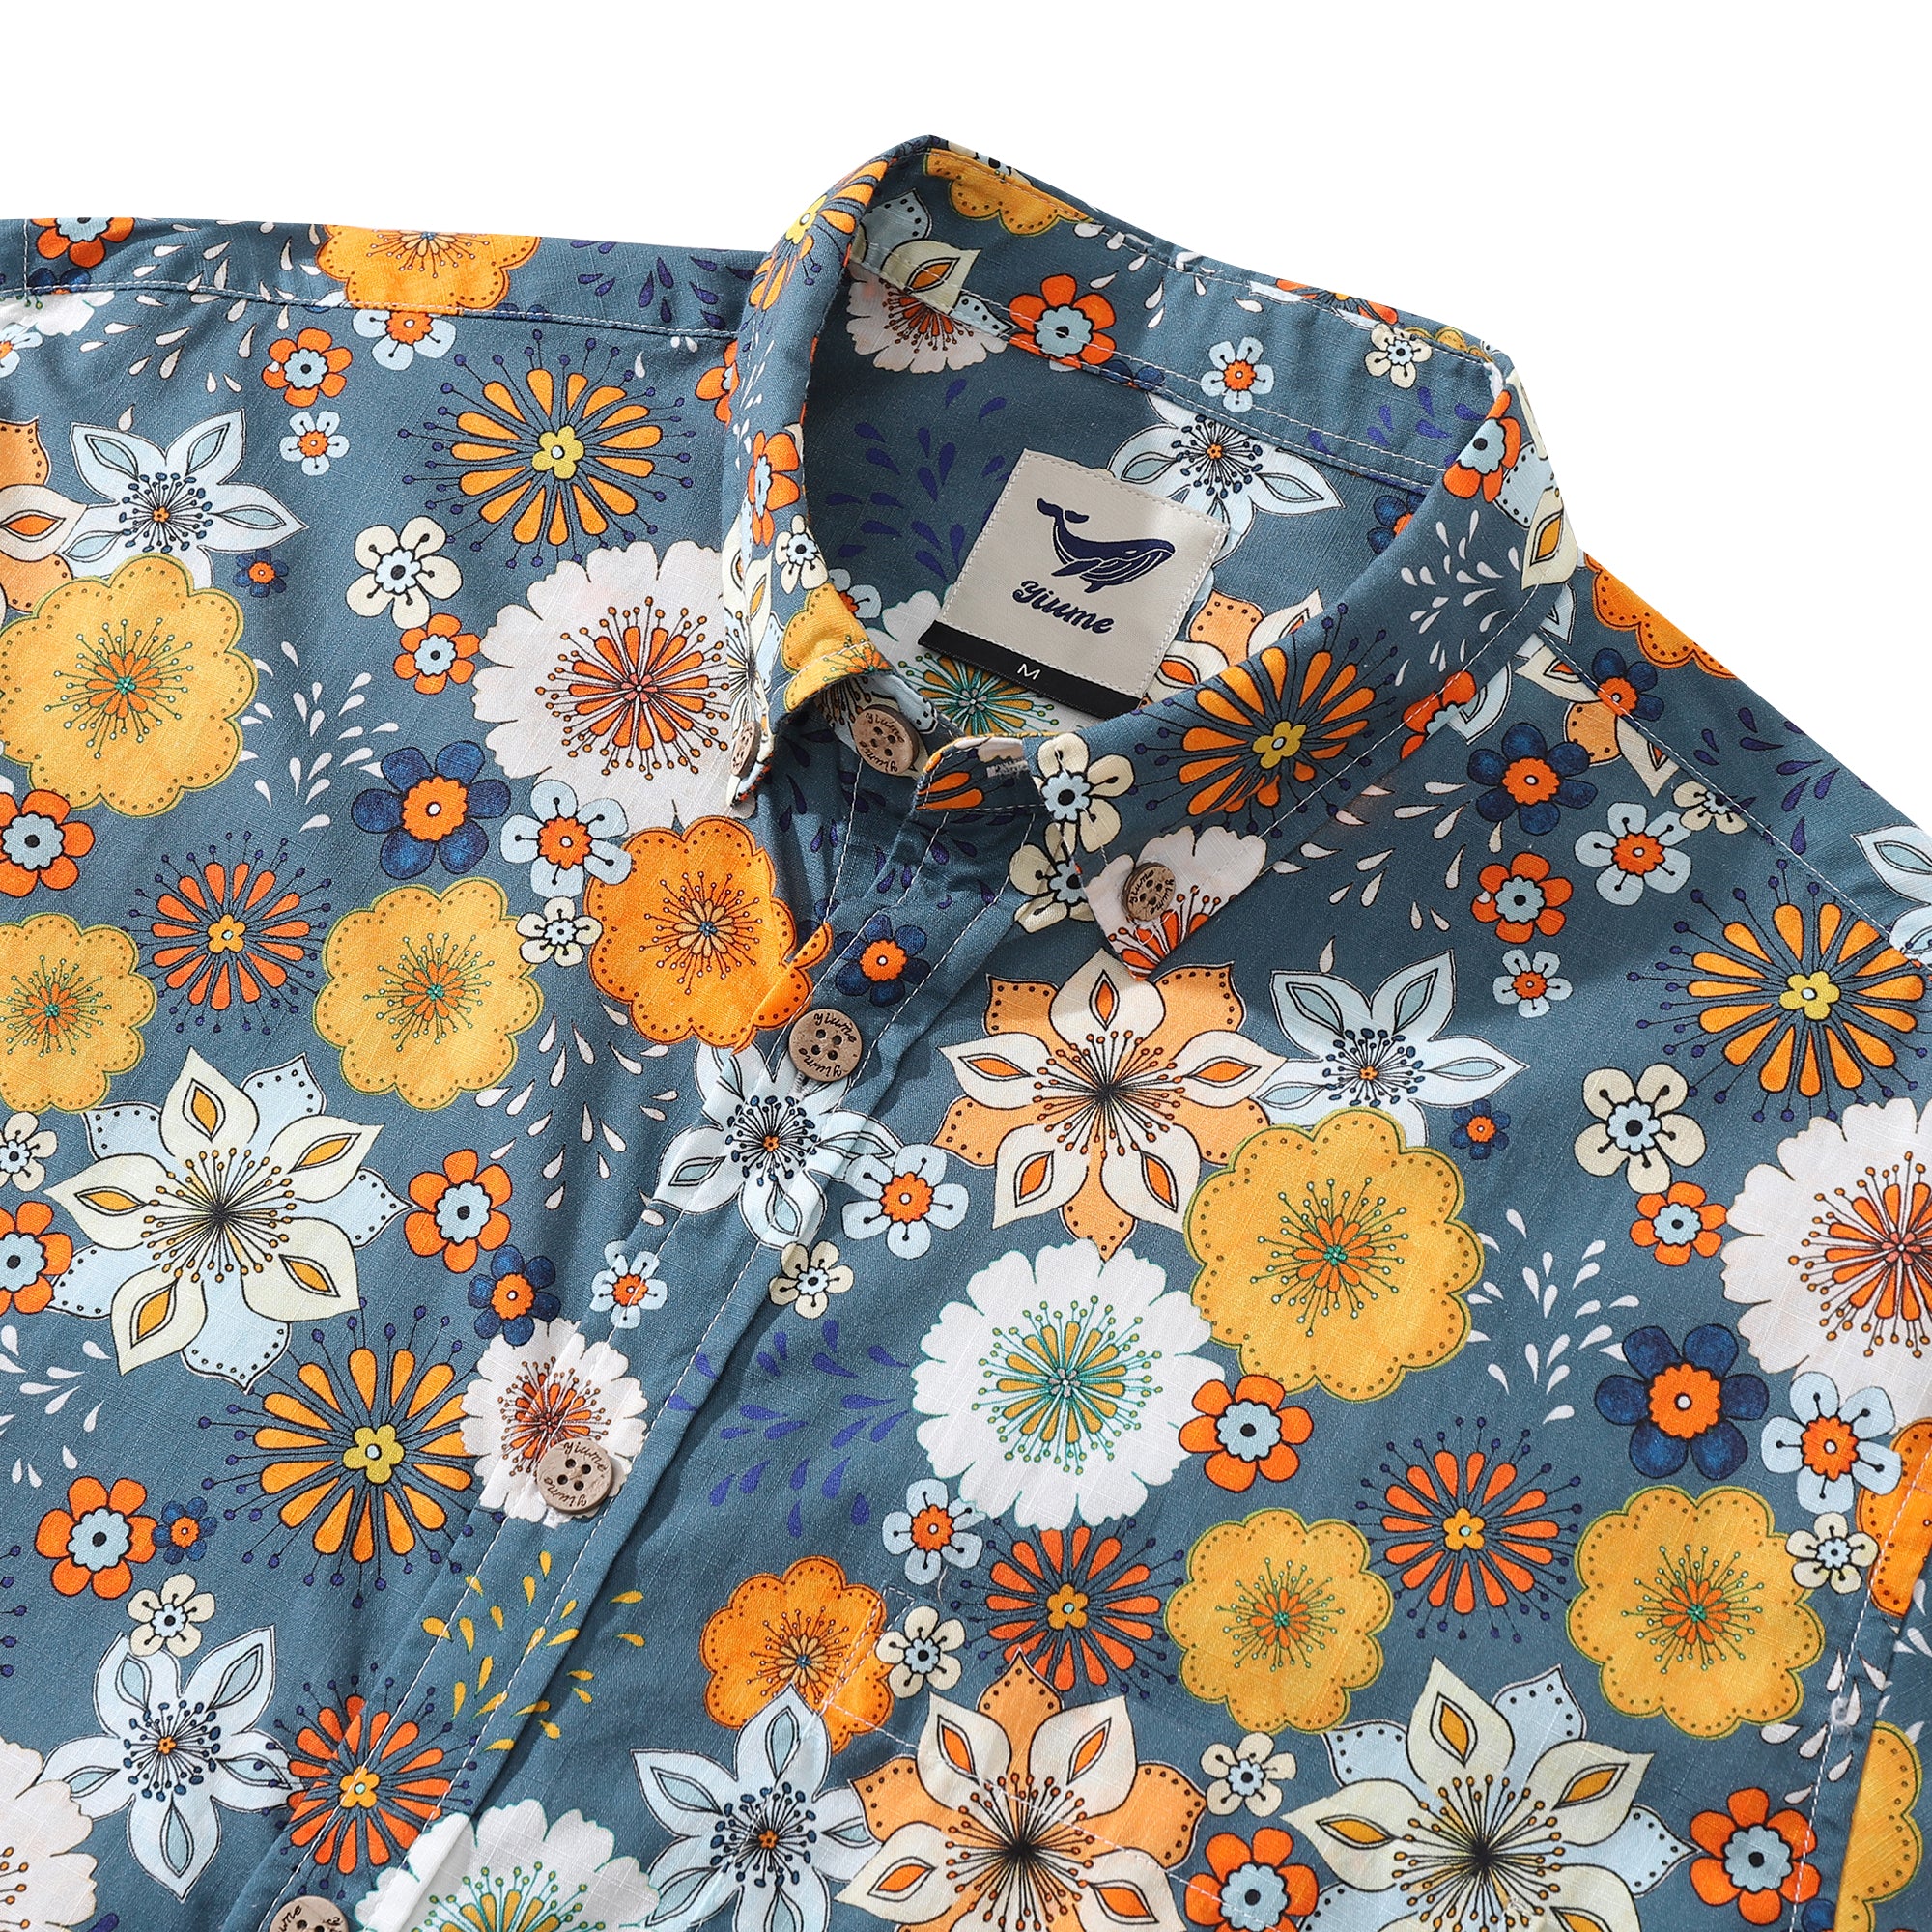 Camisa hawaiana para hombre con estampado floral de los años 60 de Samantha O' Malley Camisa Aloha de manga larga con botones de algodón